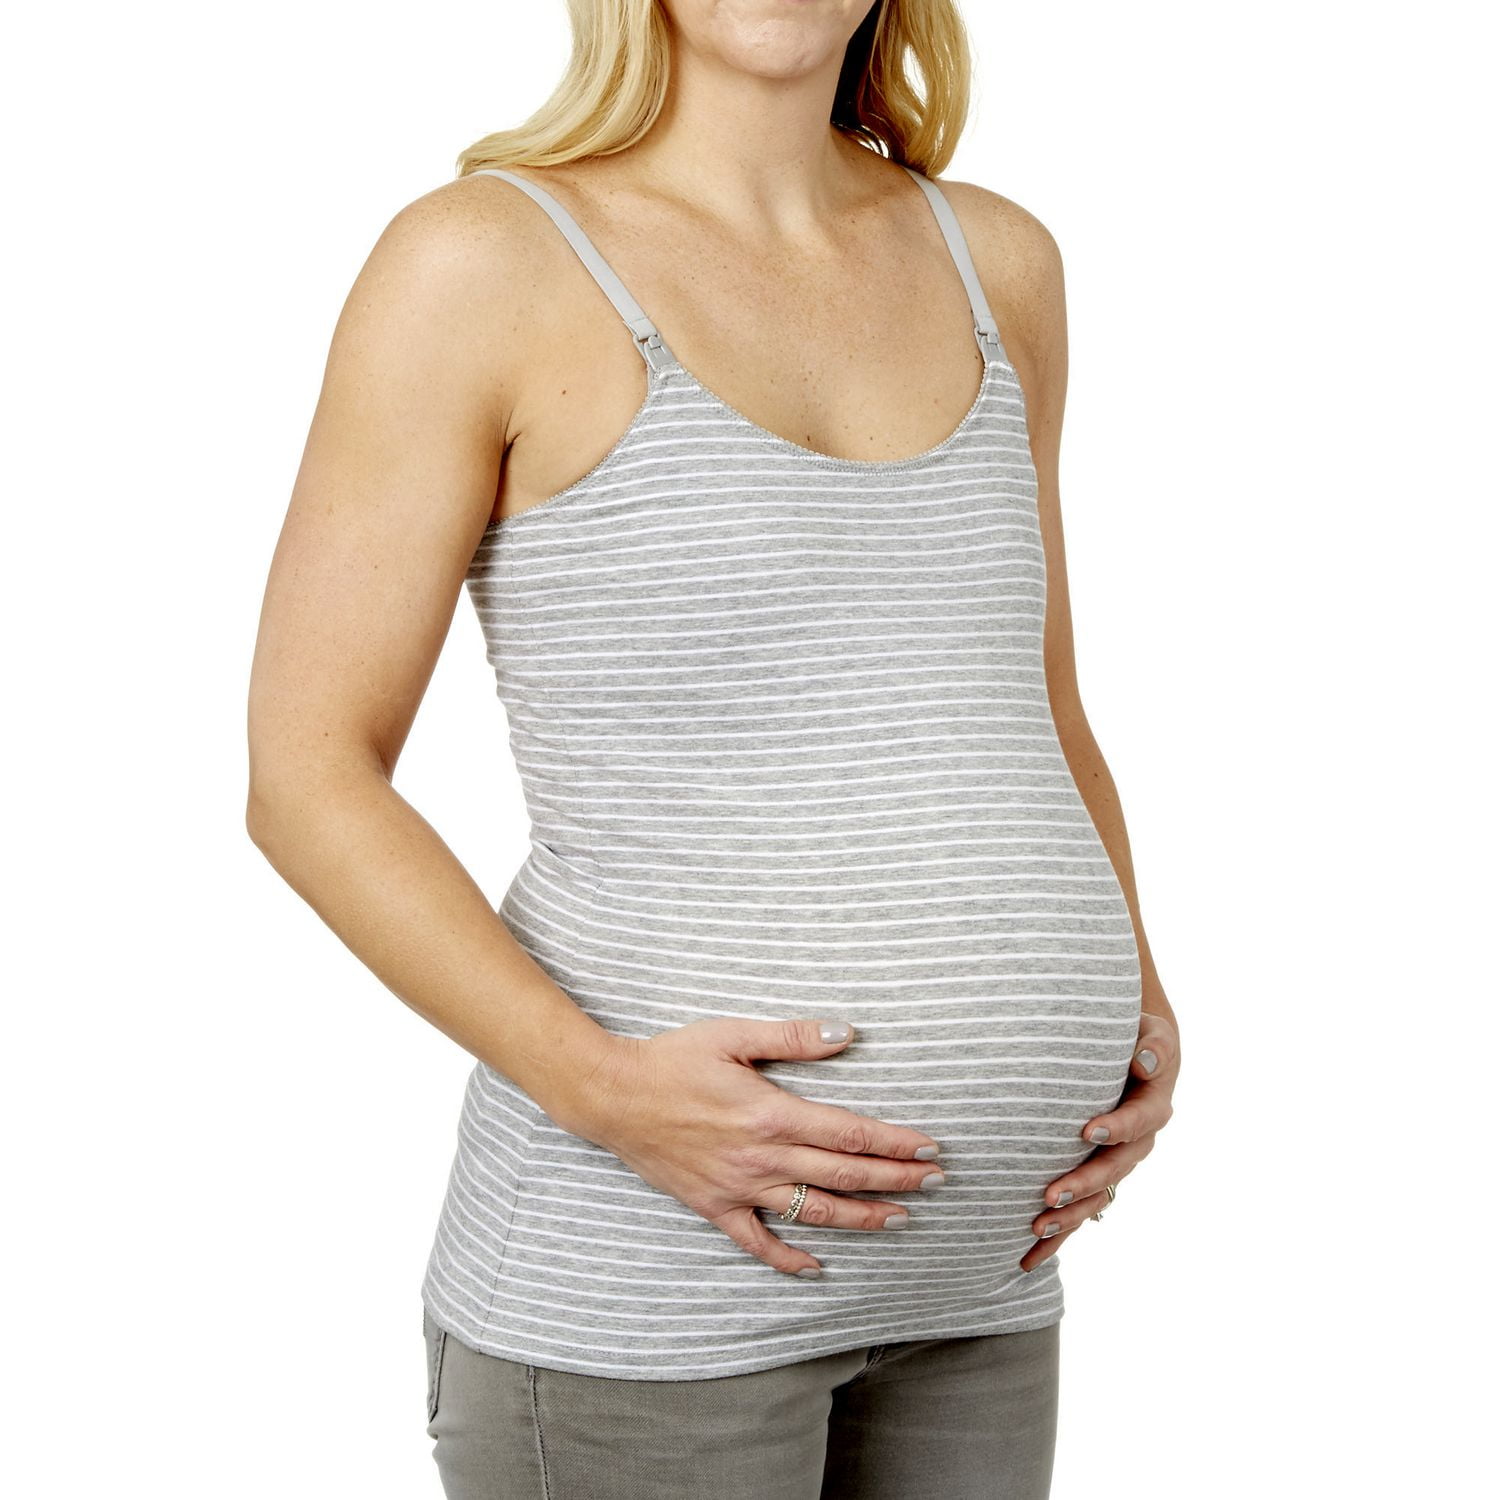 Striped nursing tank top, Maternity singlet / Nursing singlet